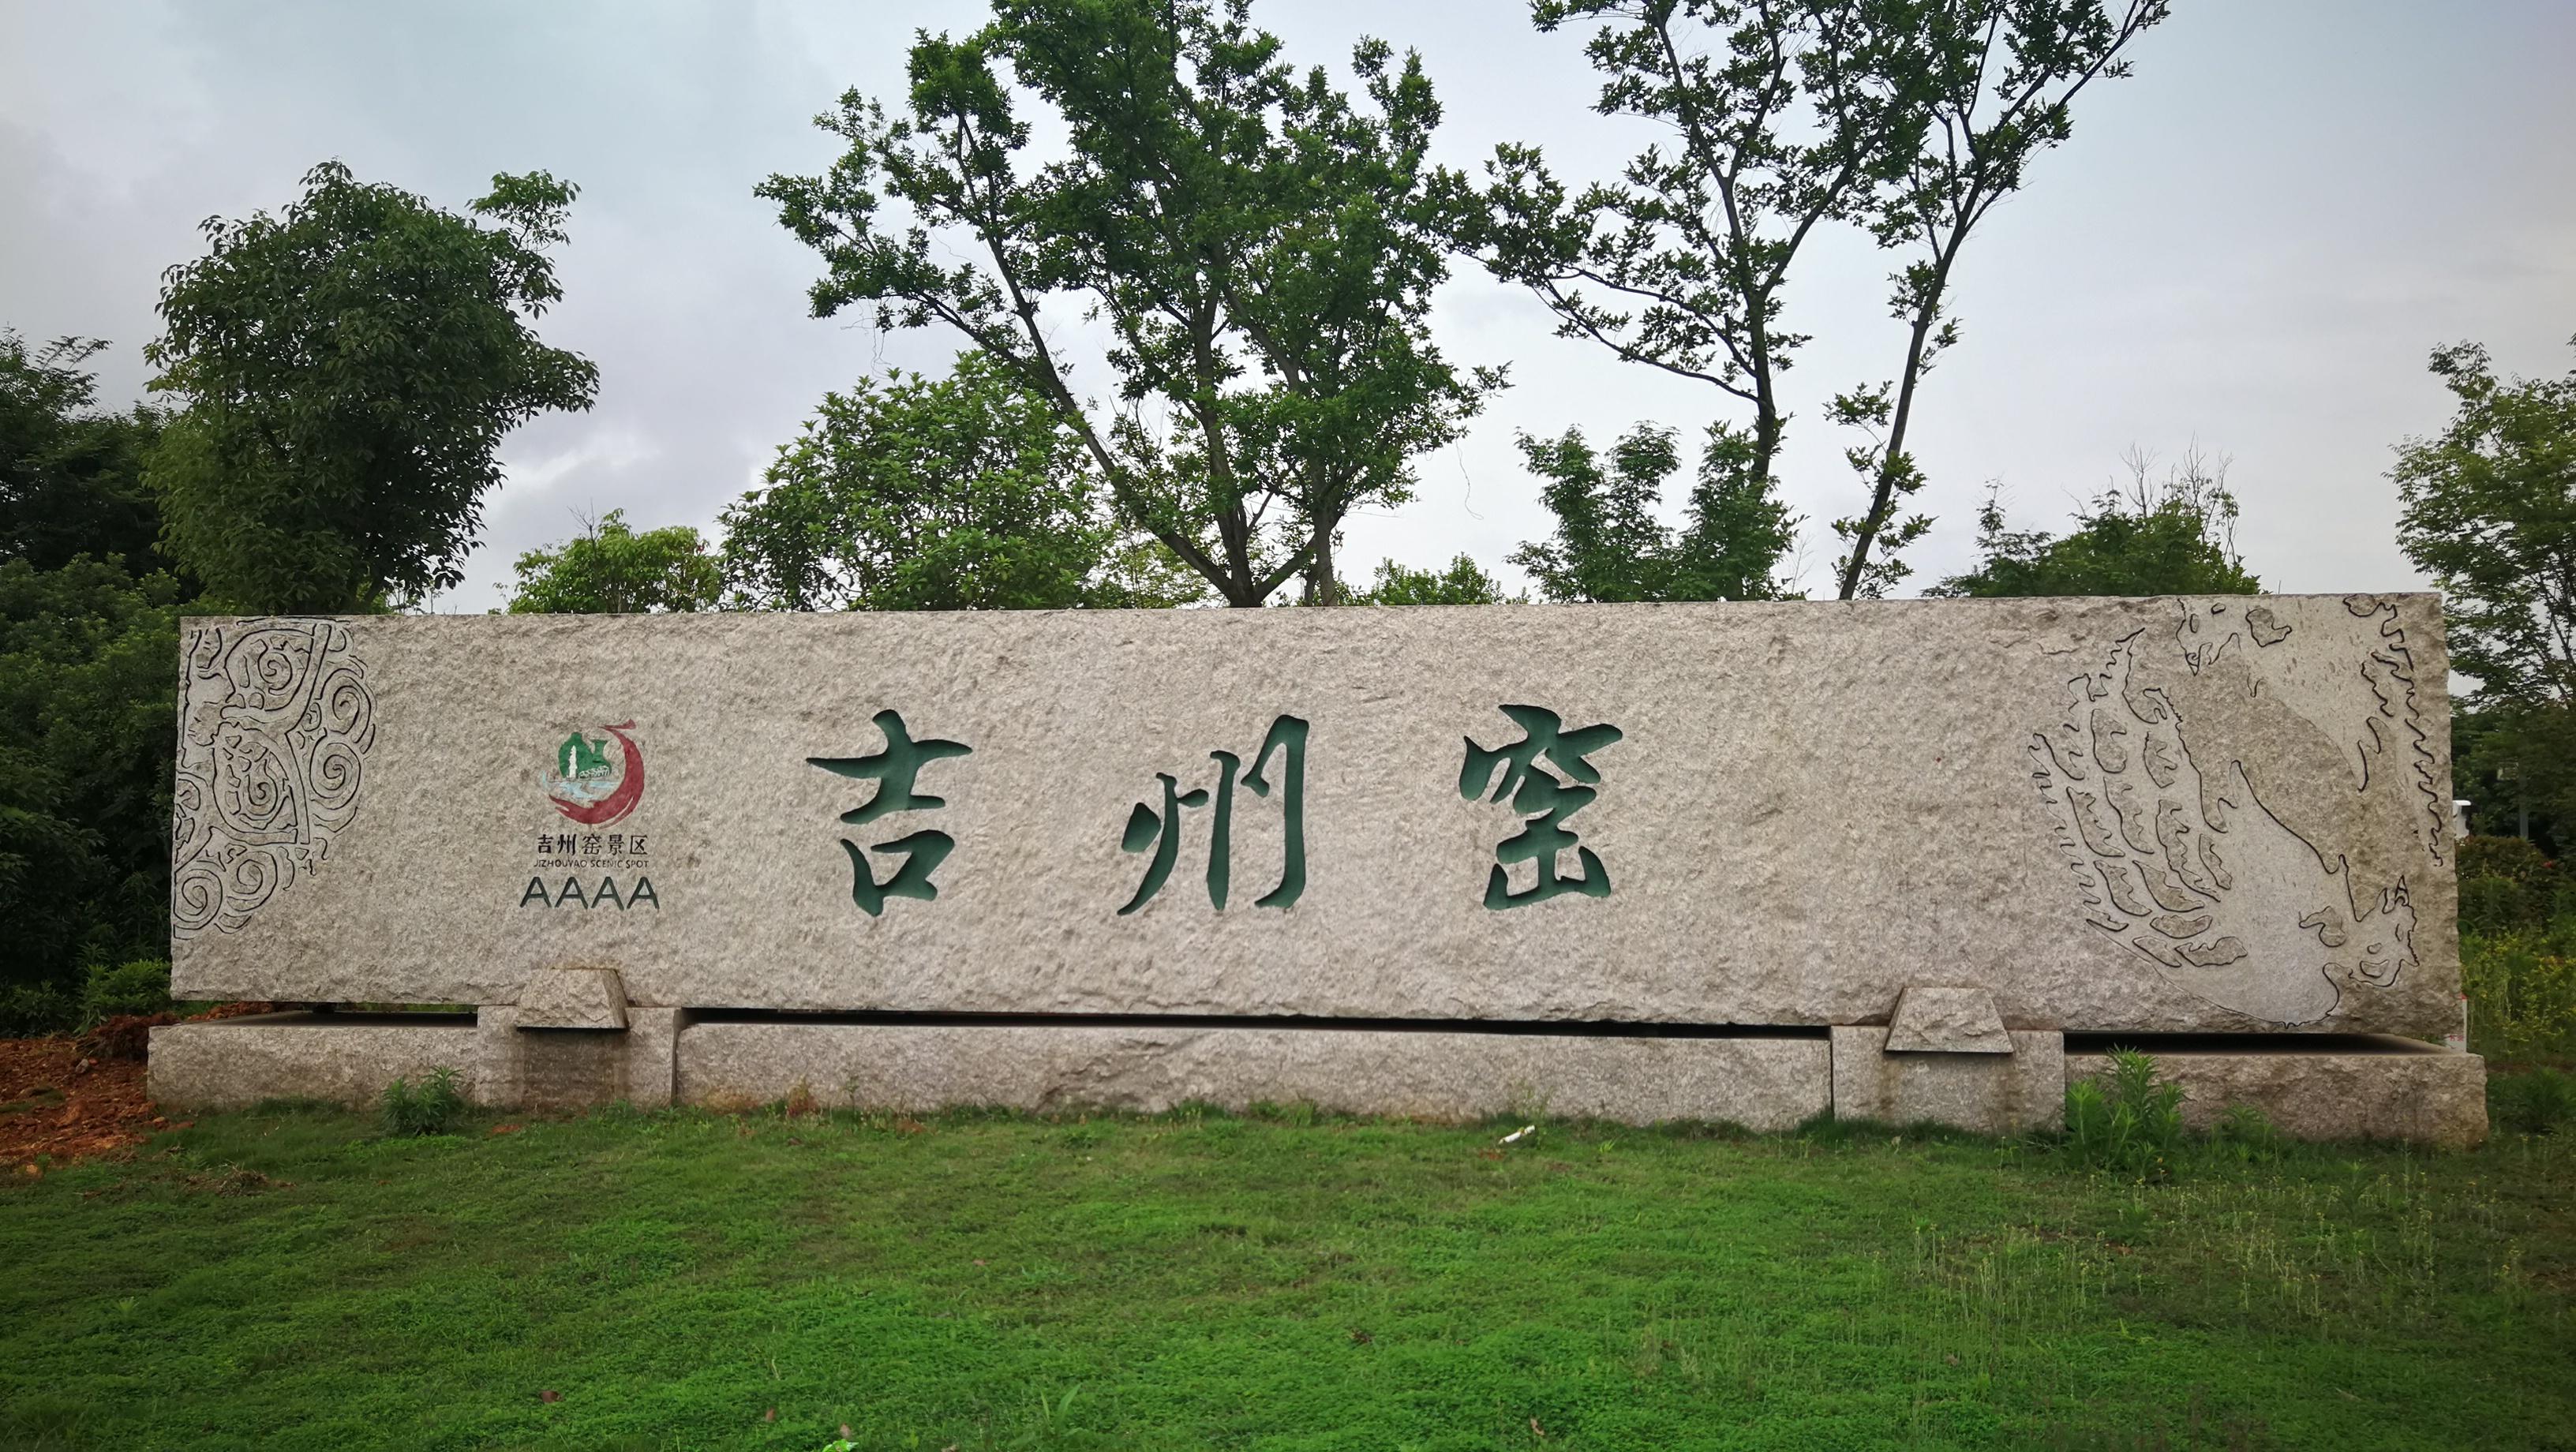 吉安旅游:5月18日至20日 吉州窑博物馆免费开放